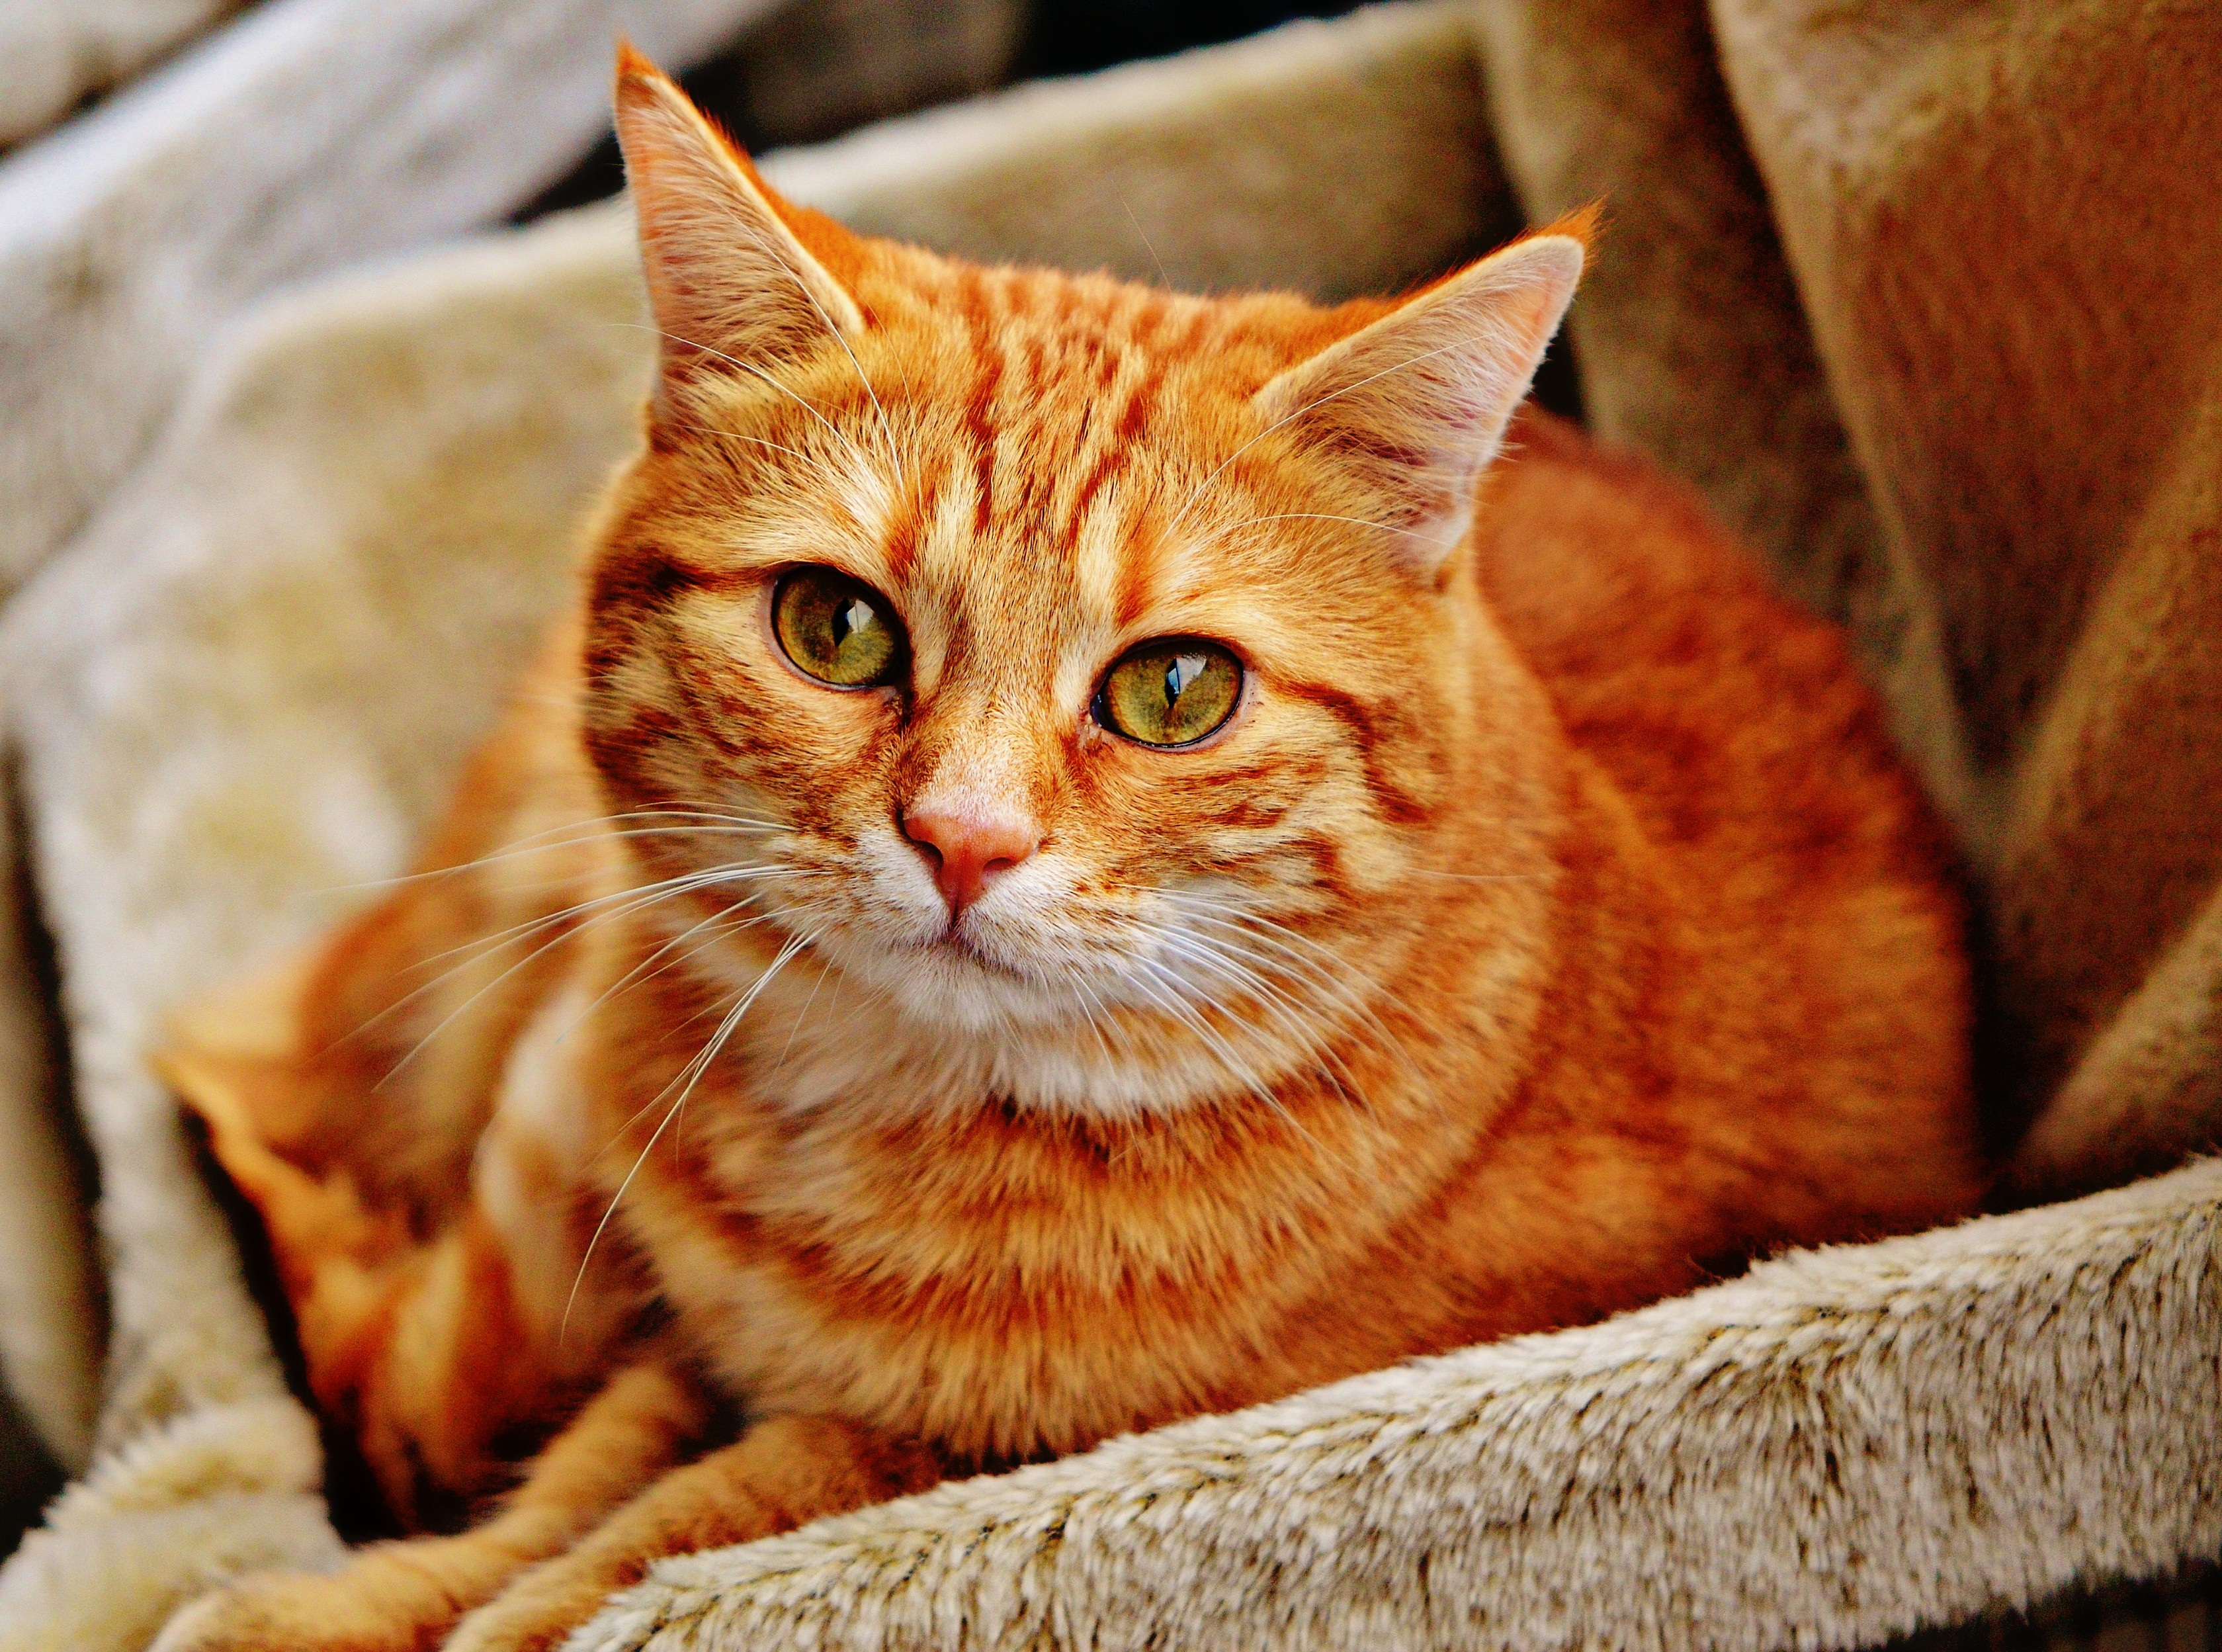 Рыжая полосатая кошка. Аравийский МАУ рыжий. Бразильская короткошерстная кошка рыжая. Бенгальская короткошерстная кошка рыжая. Тигровый макрелевый табби рыжий.